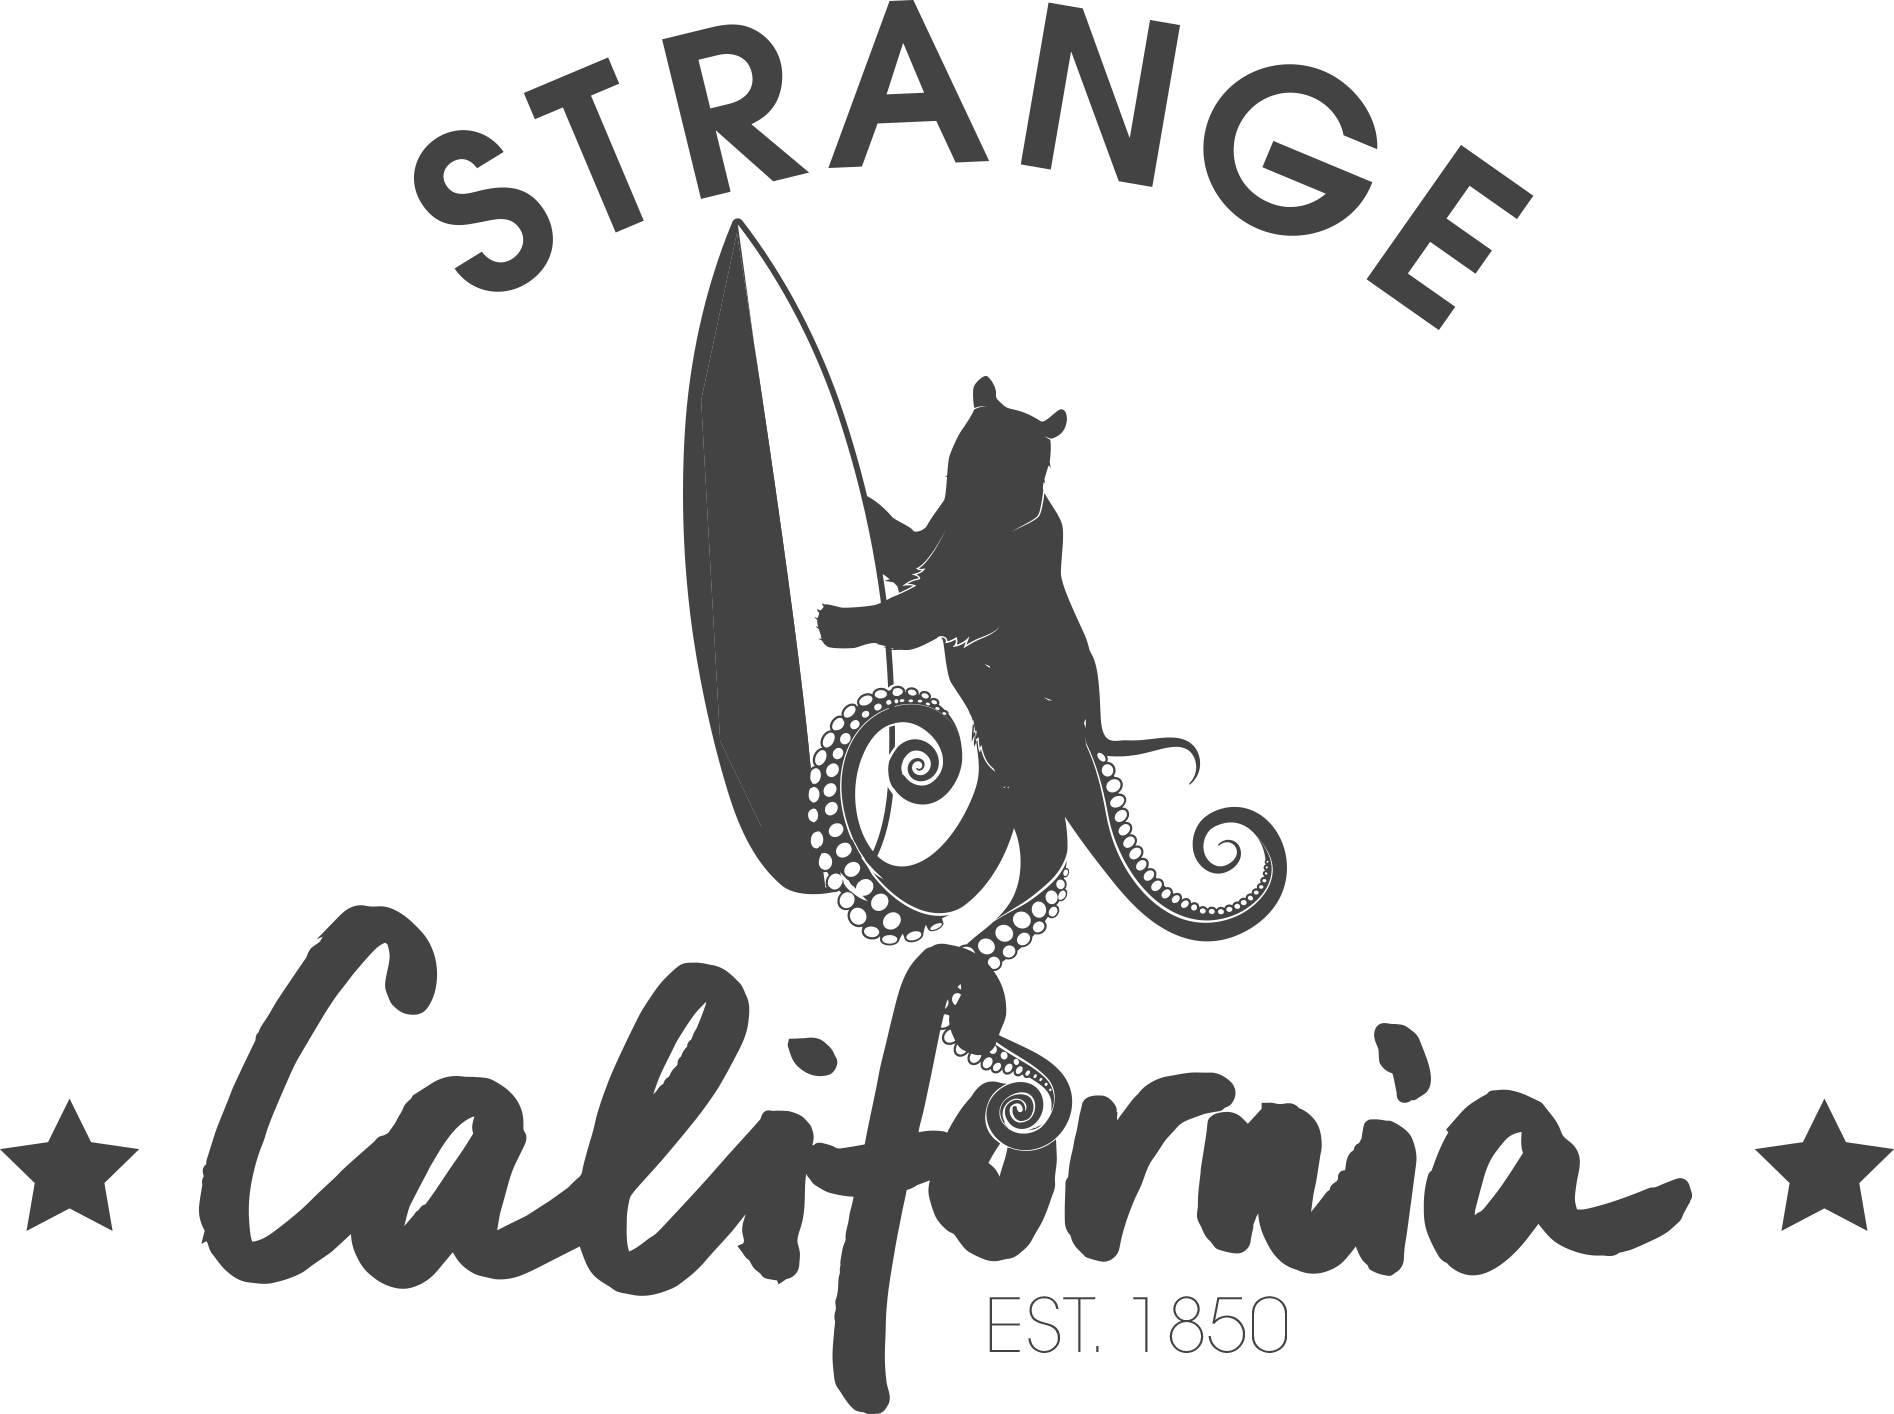 California Logo - Jason Batt California Logo and Kickstarter Marketing Tools